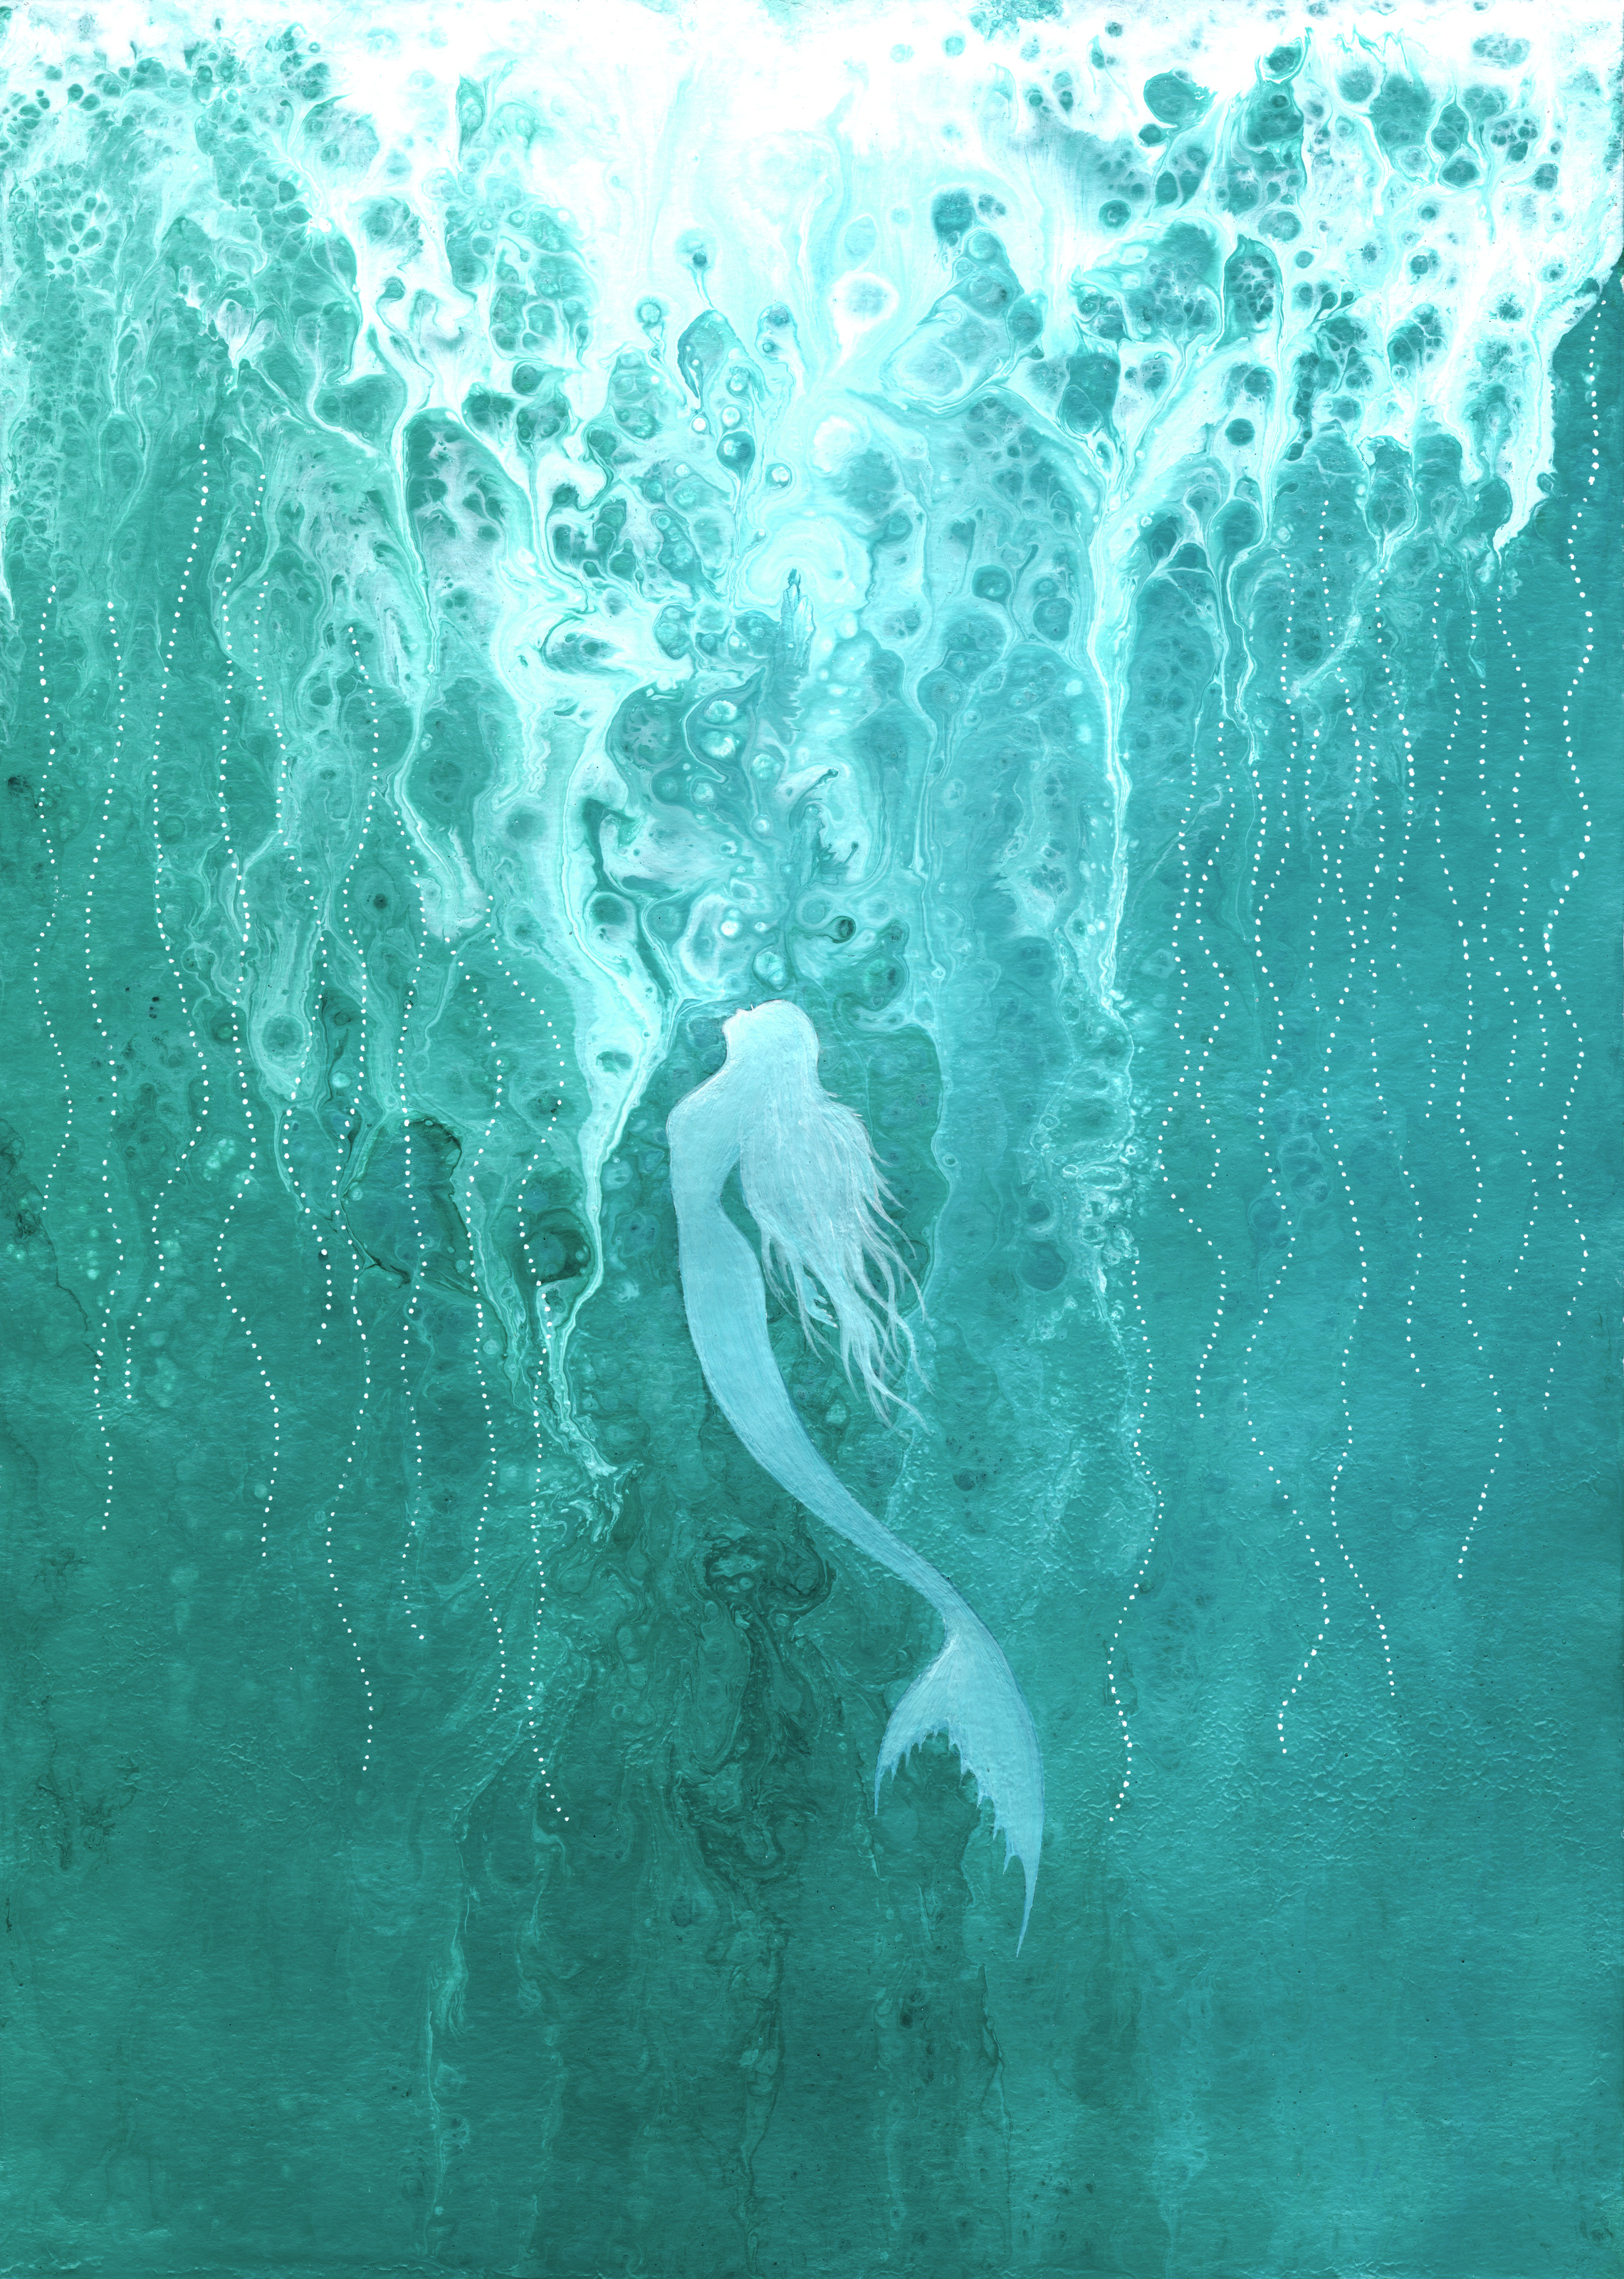 Mermaid Rising Mural - Murals Your Way